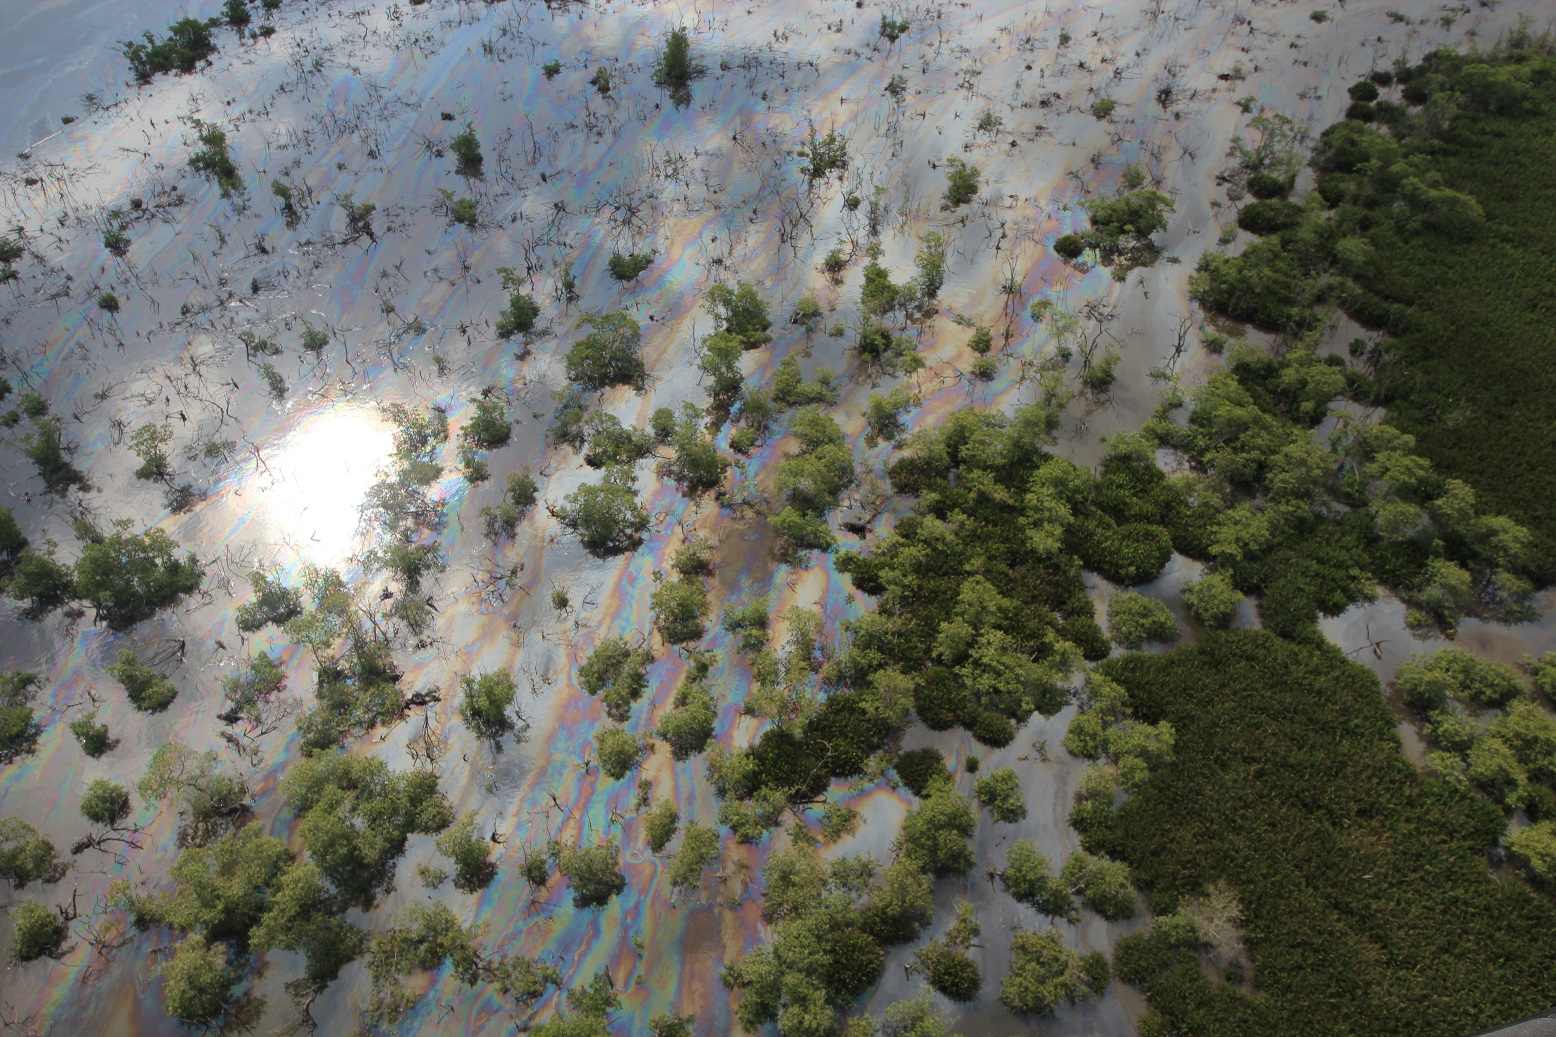 O vazamento impactou diretamente duas unidades de conservação do município de Magé – a APA Rio Estrela e o Parque Natural Barão de Mauá. Foto Mario Moscatelli